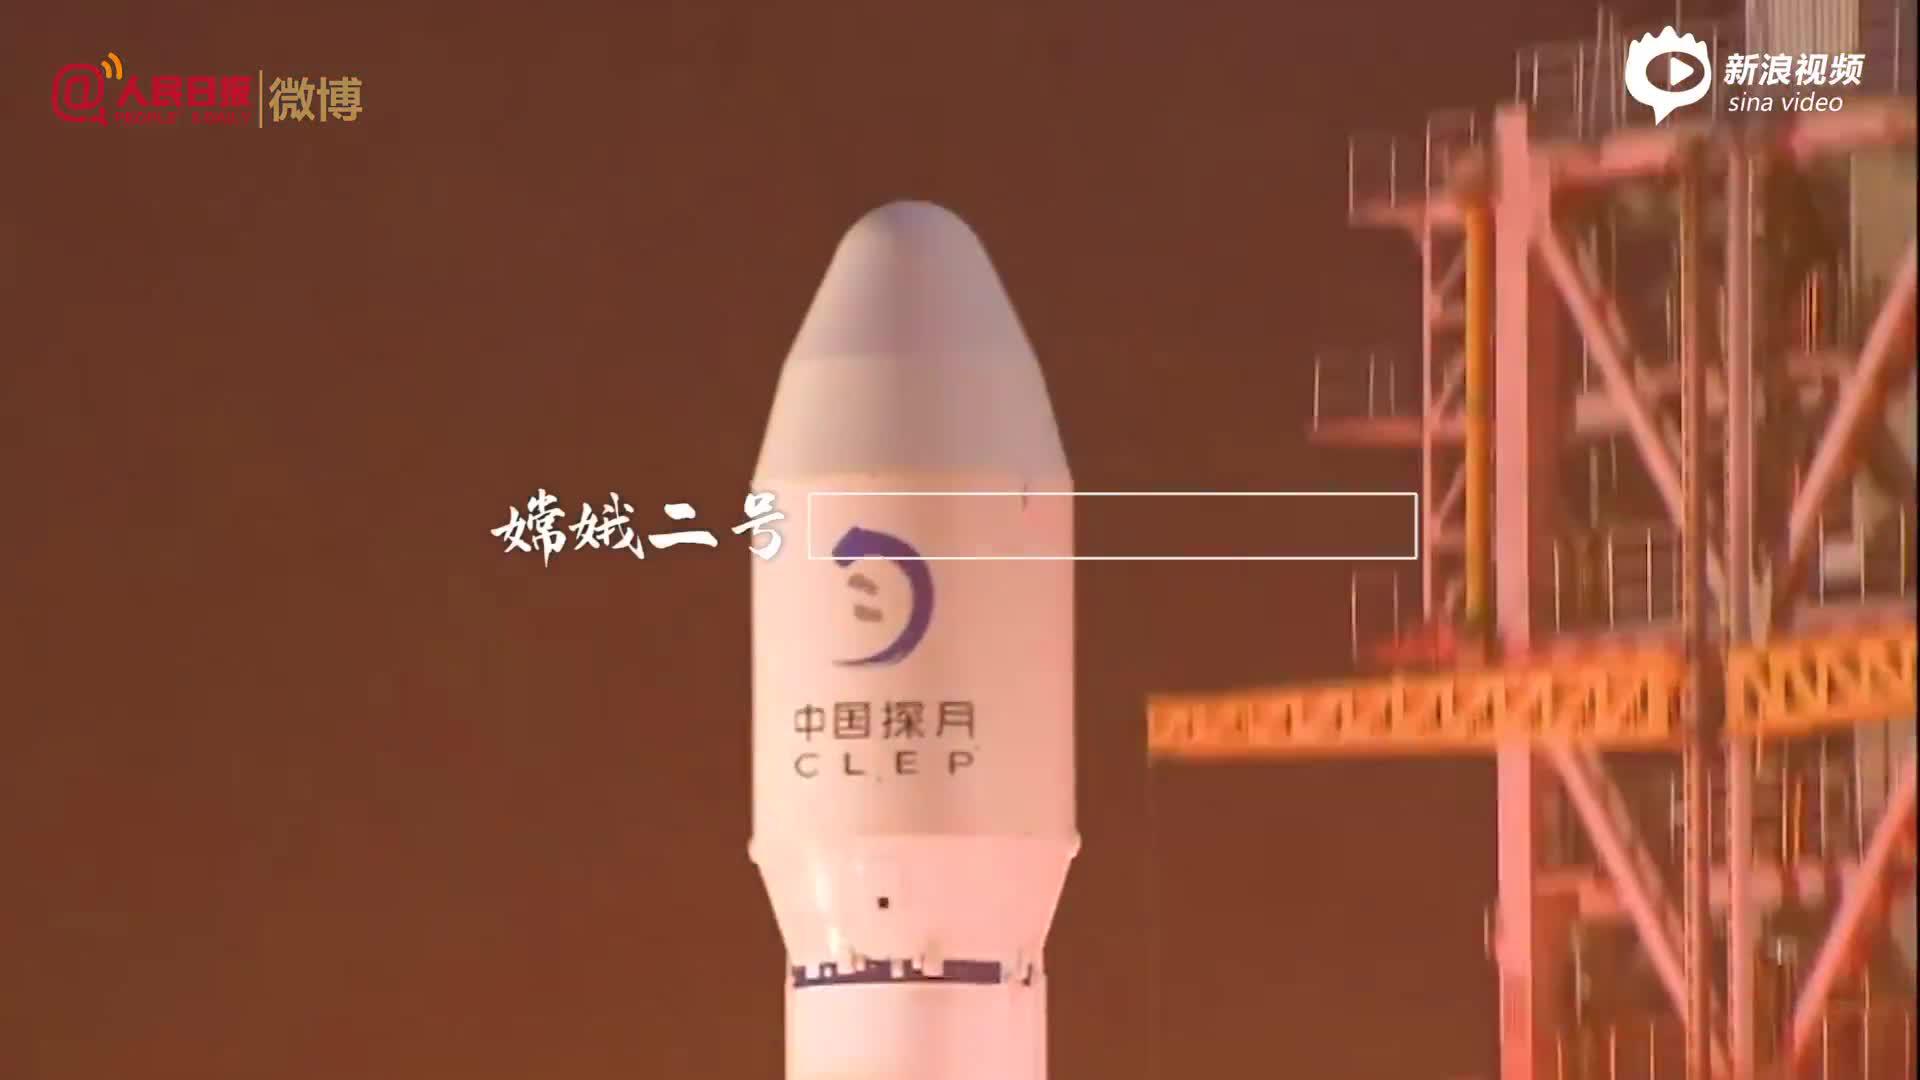 90秒感受中国嫦娥工程的高光时刻